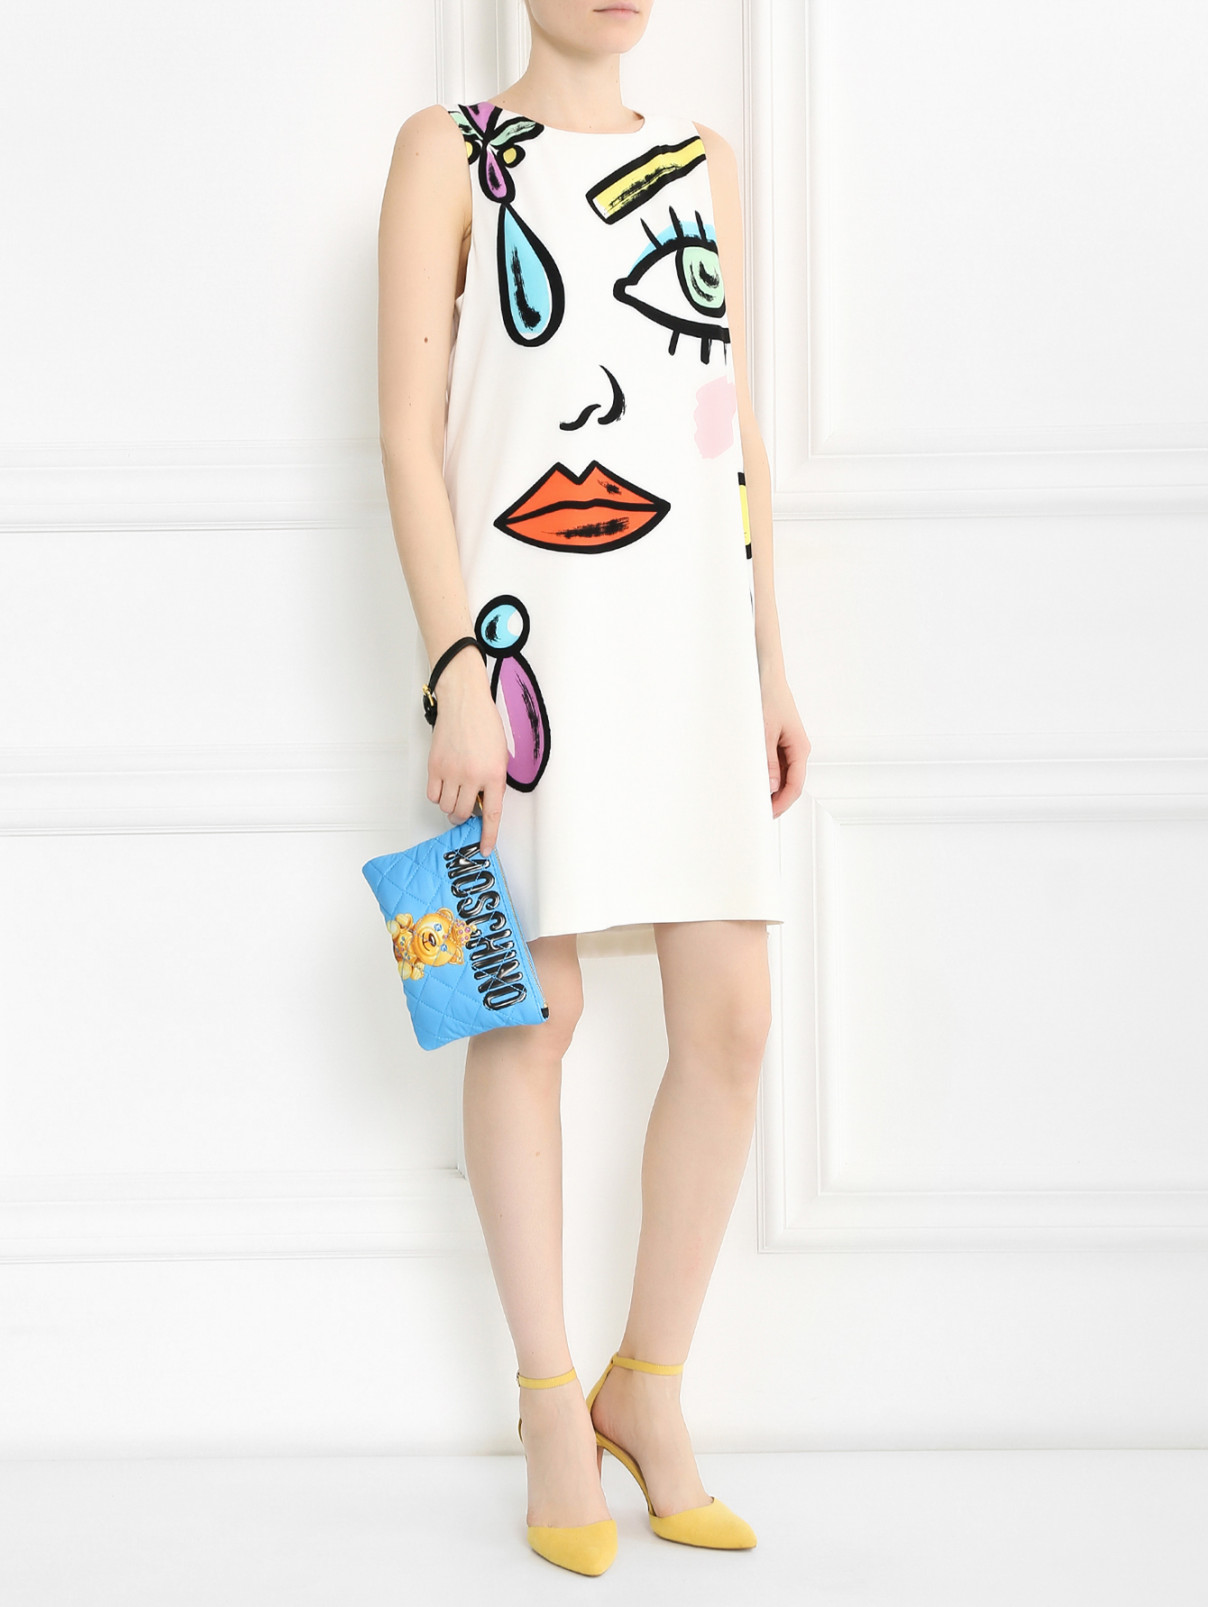 Стеганный клатч с узором и золотой фурнитурой Moschino Couture  –  Модель Общий вид  – Цвет:  Синий